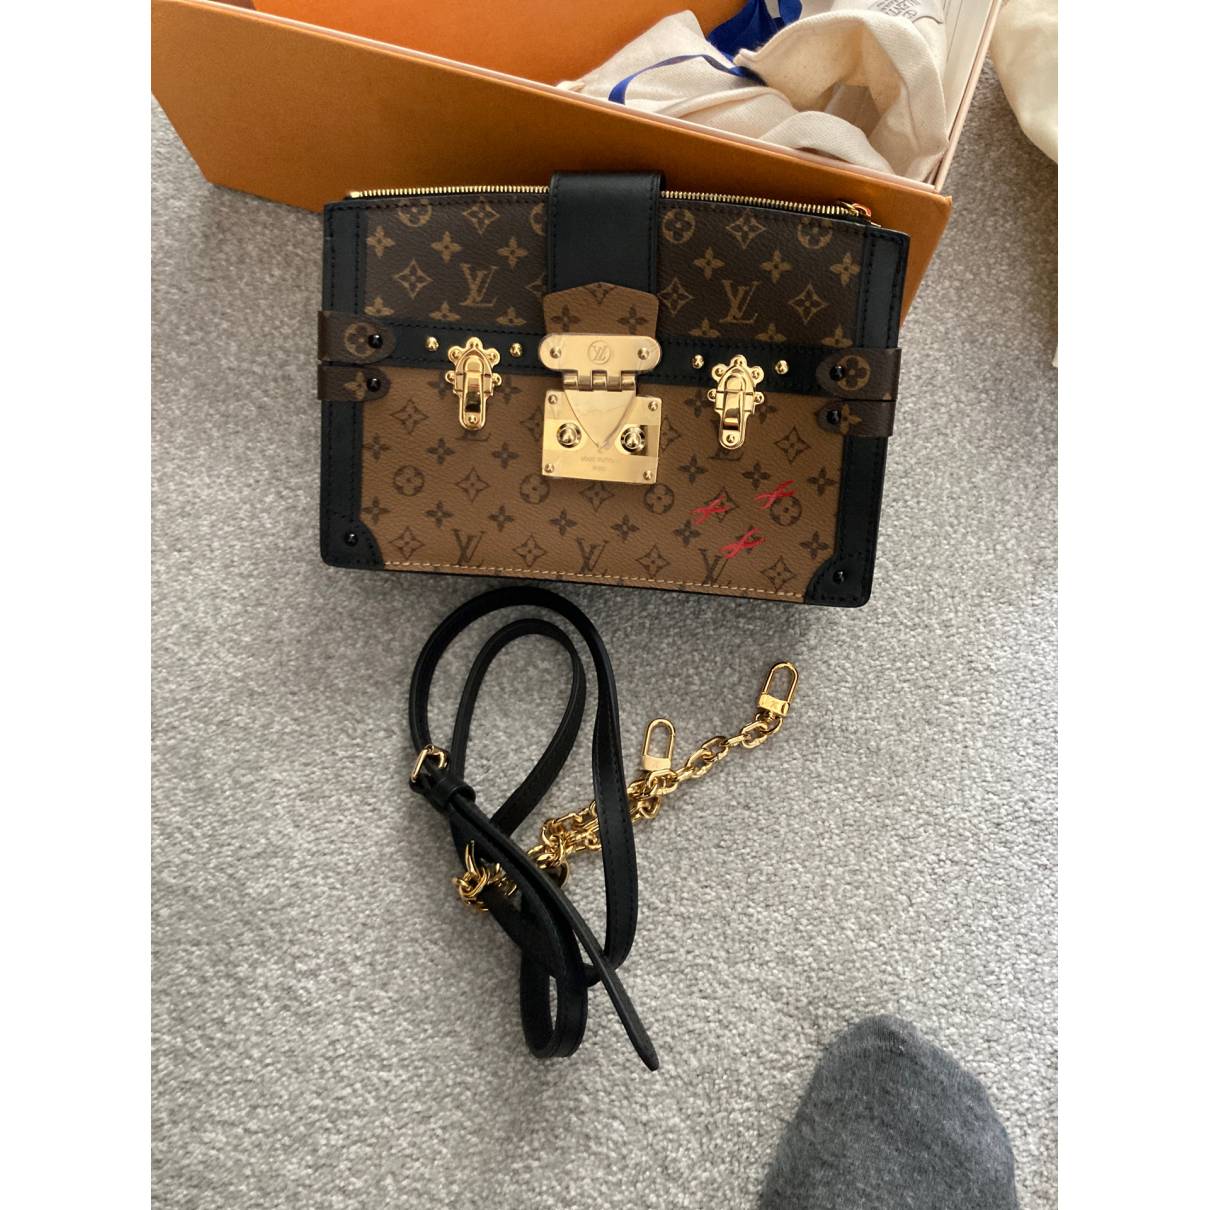 Louis Vuitton Authenticated Pochette Trunk Handbag